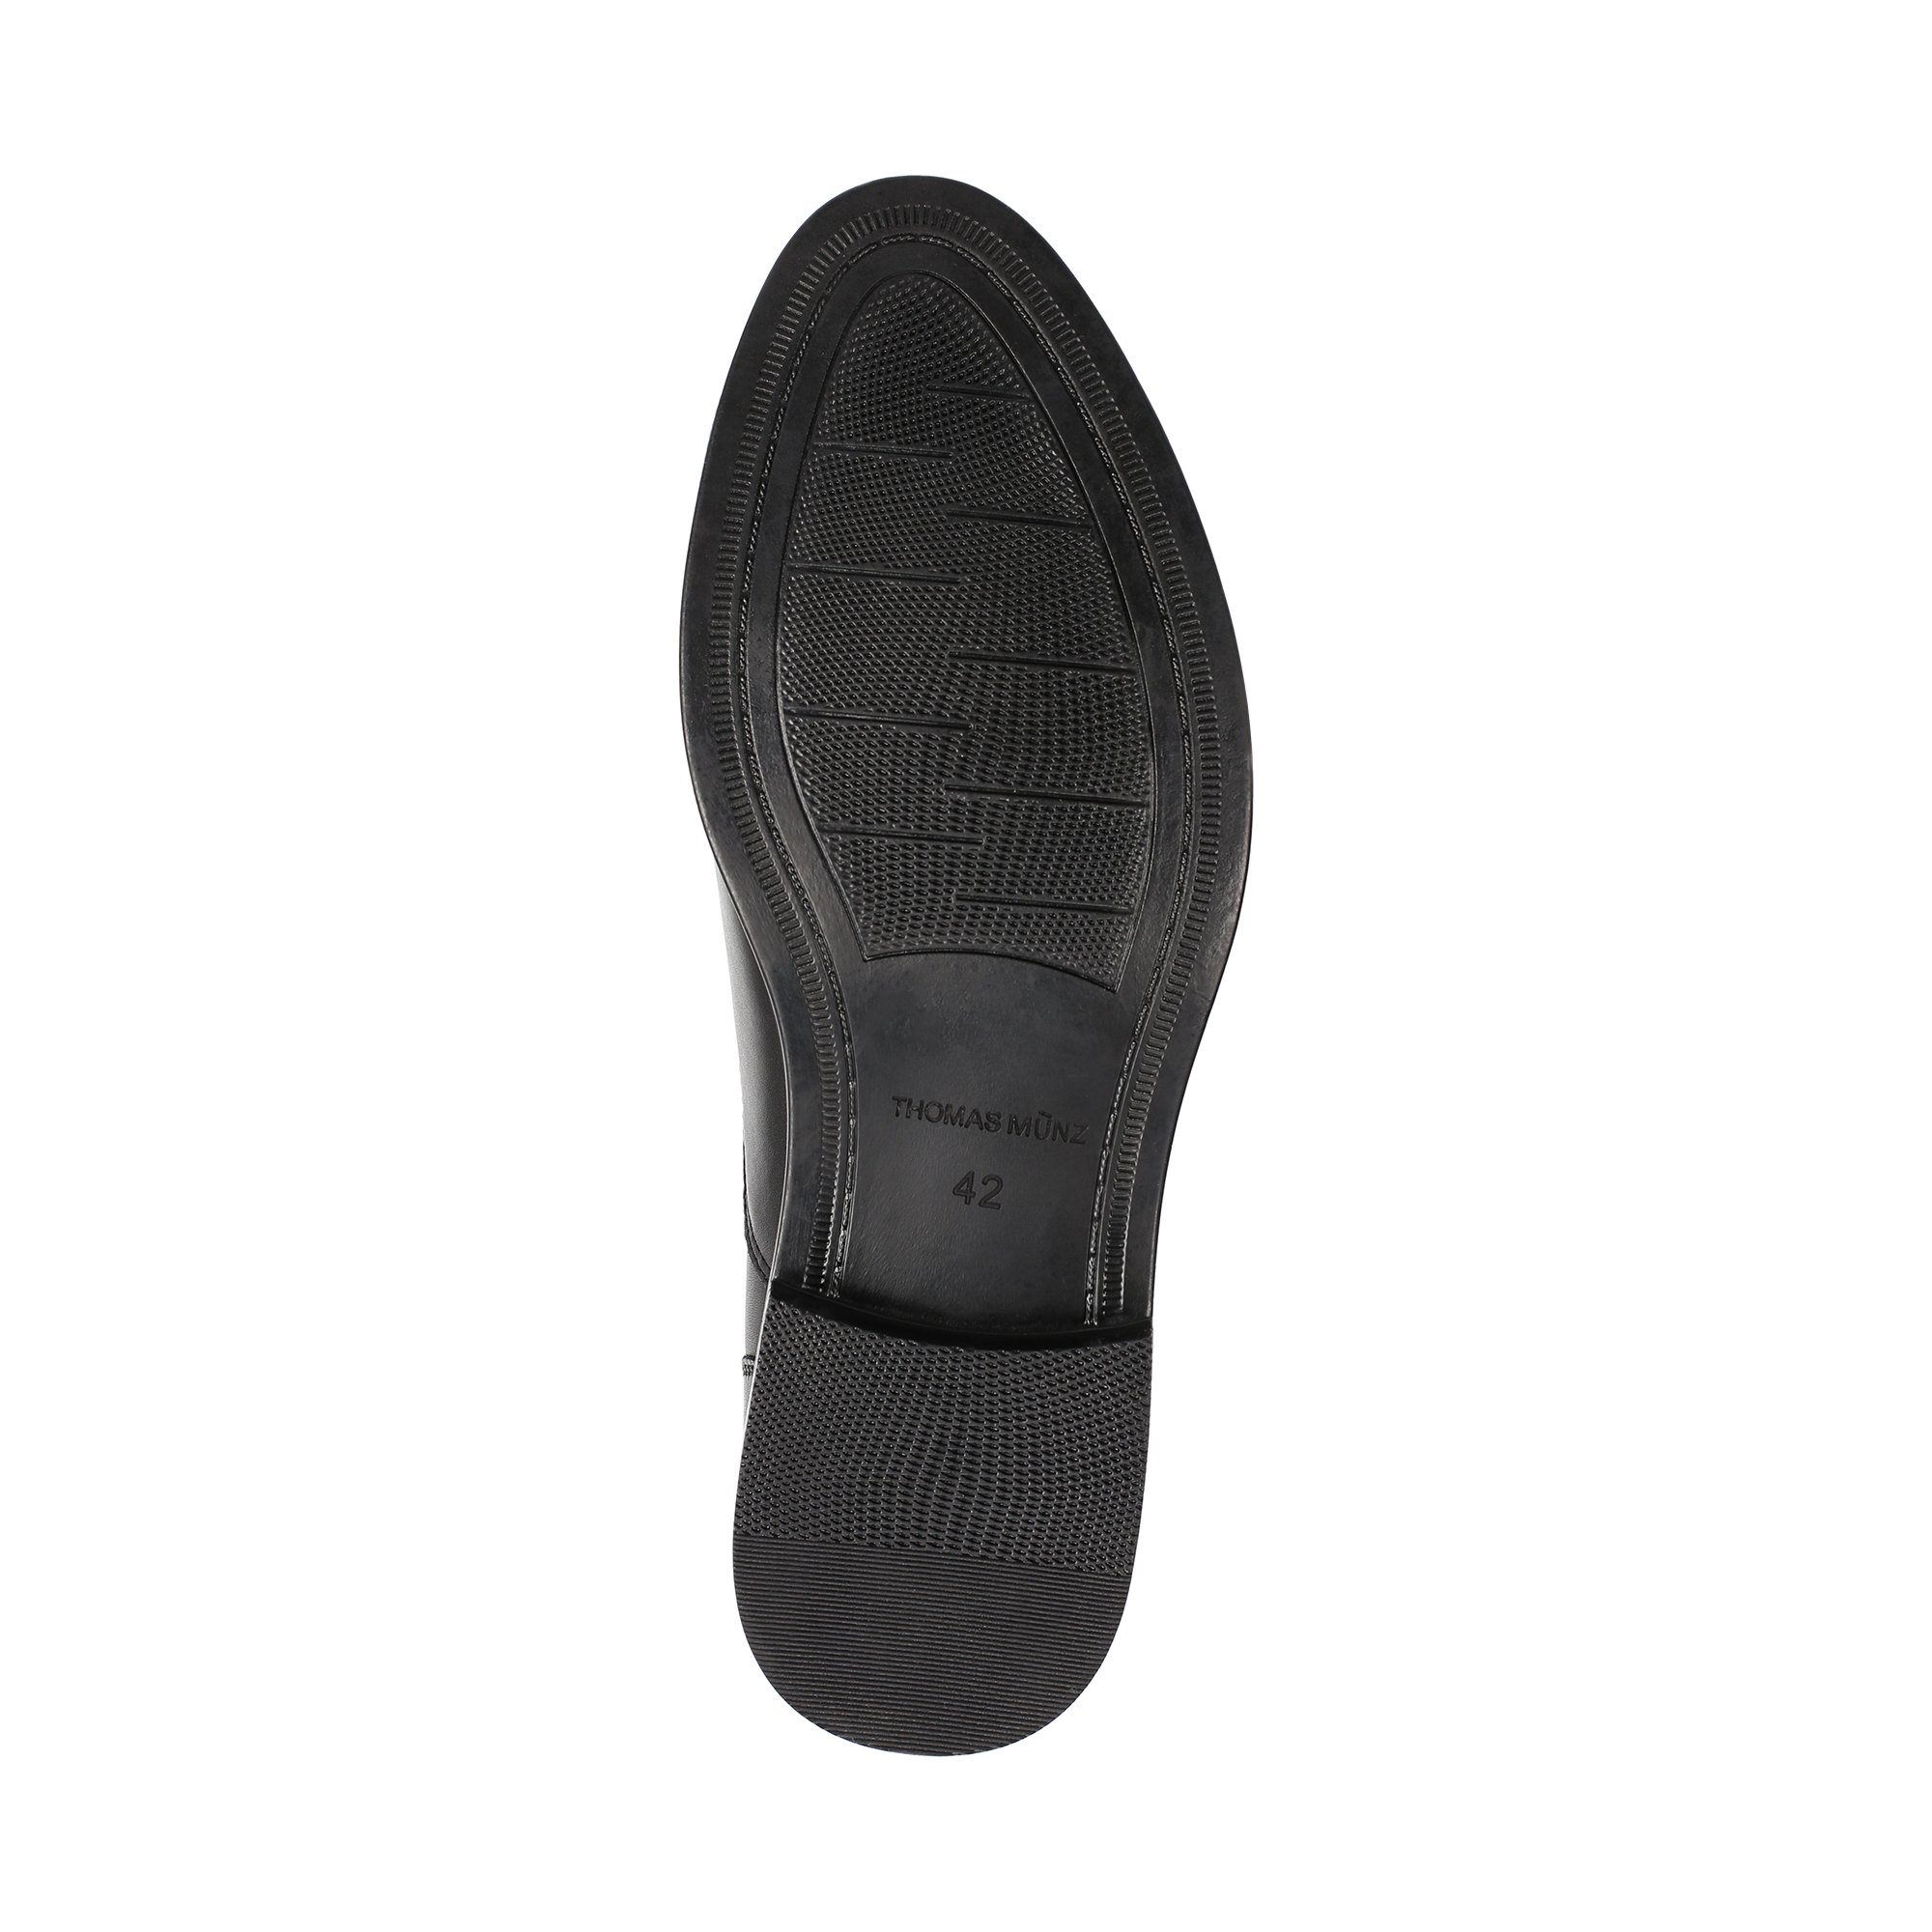 Туфли/полуботинки Thomas Munz 058-231A-1602, цвет черный, размер 40 - фото 4